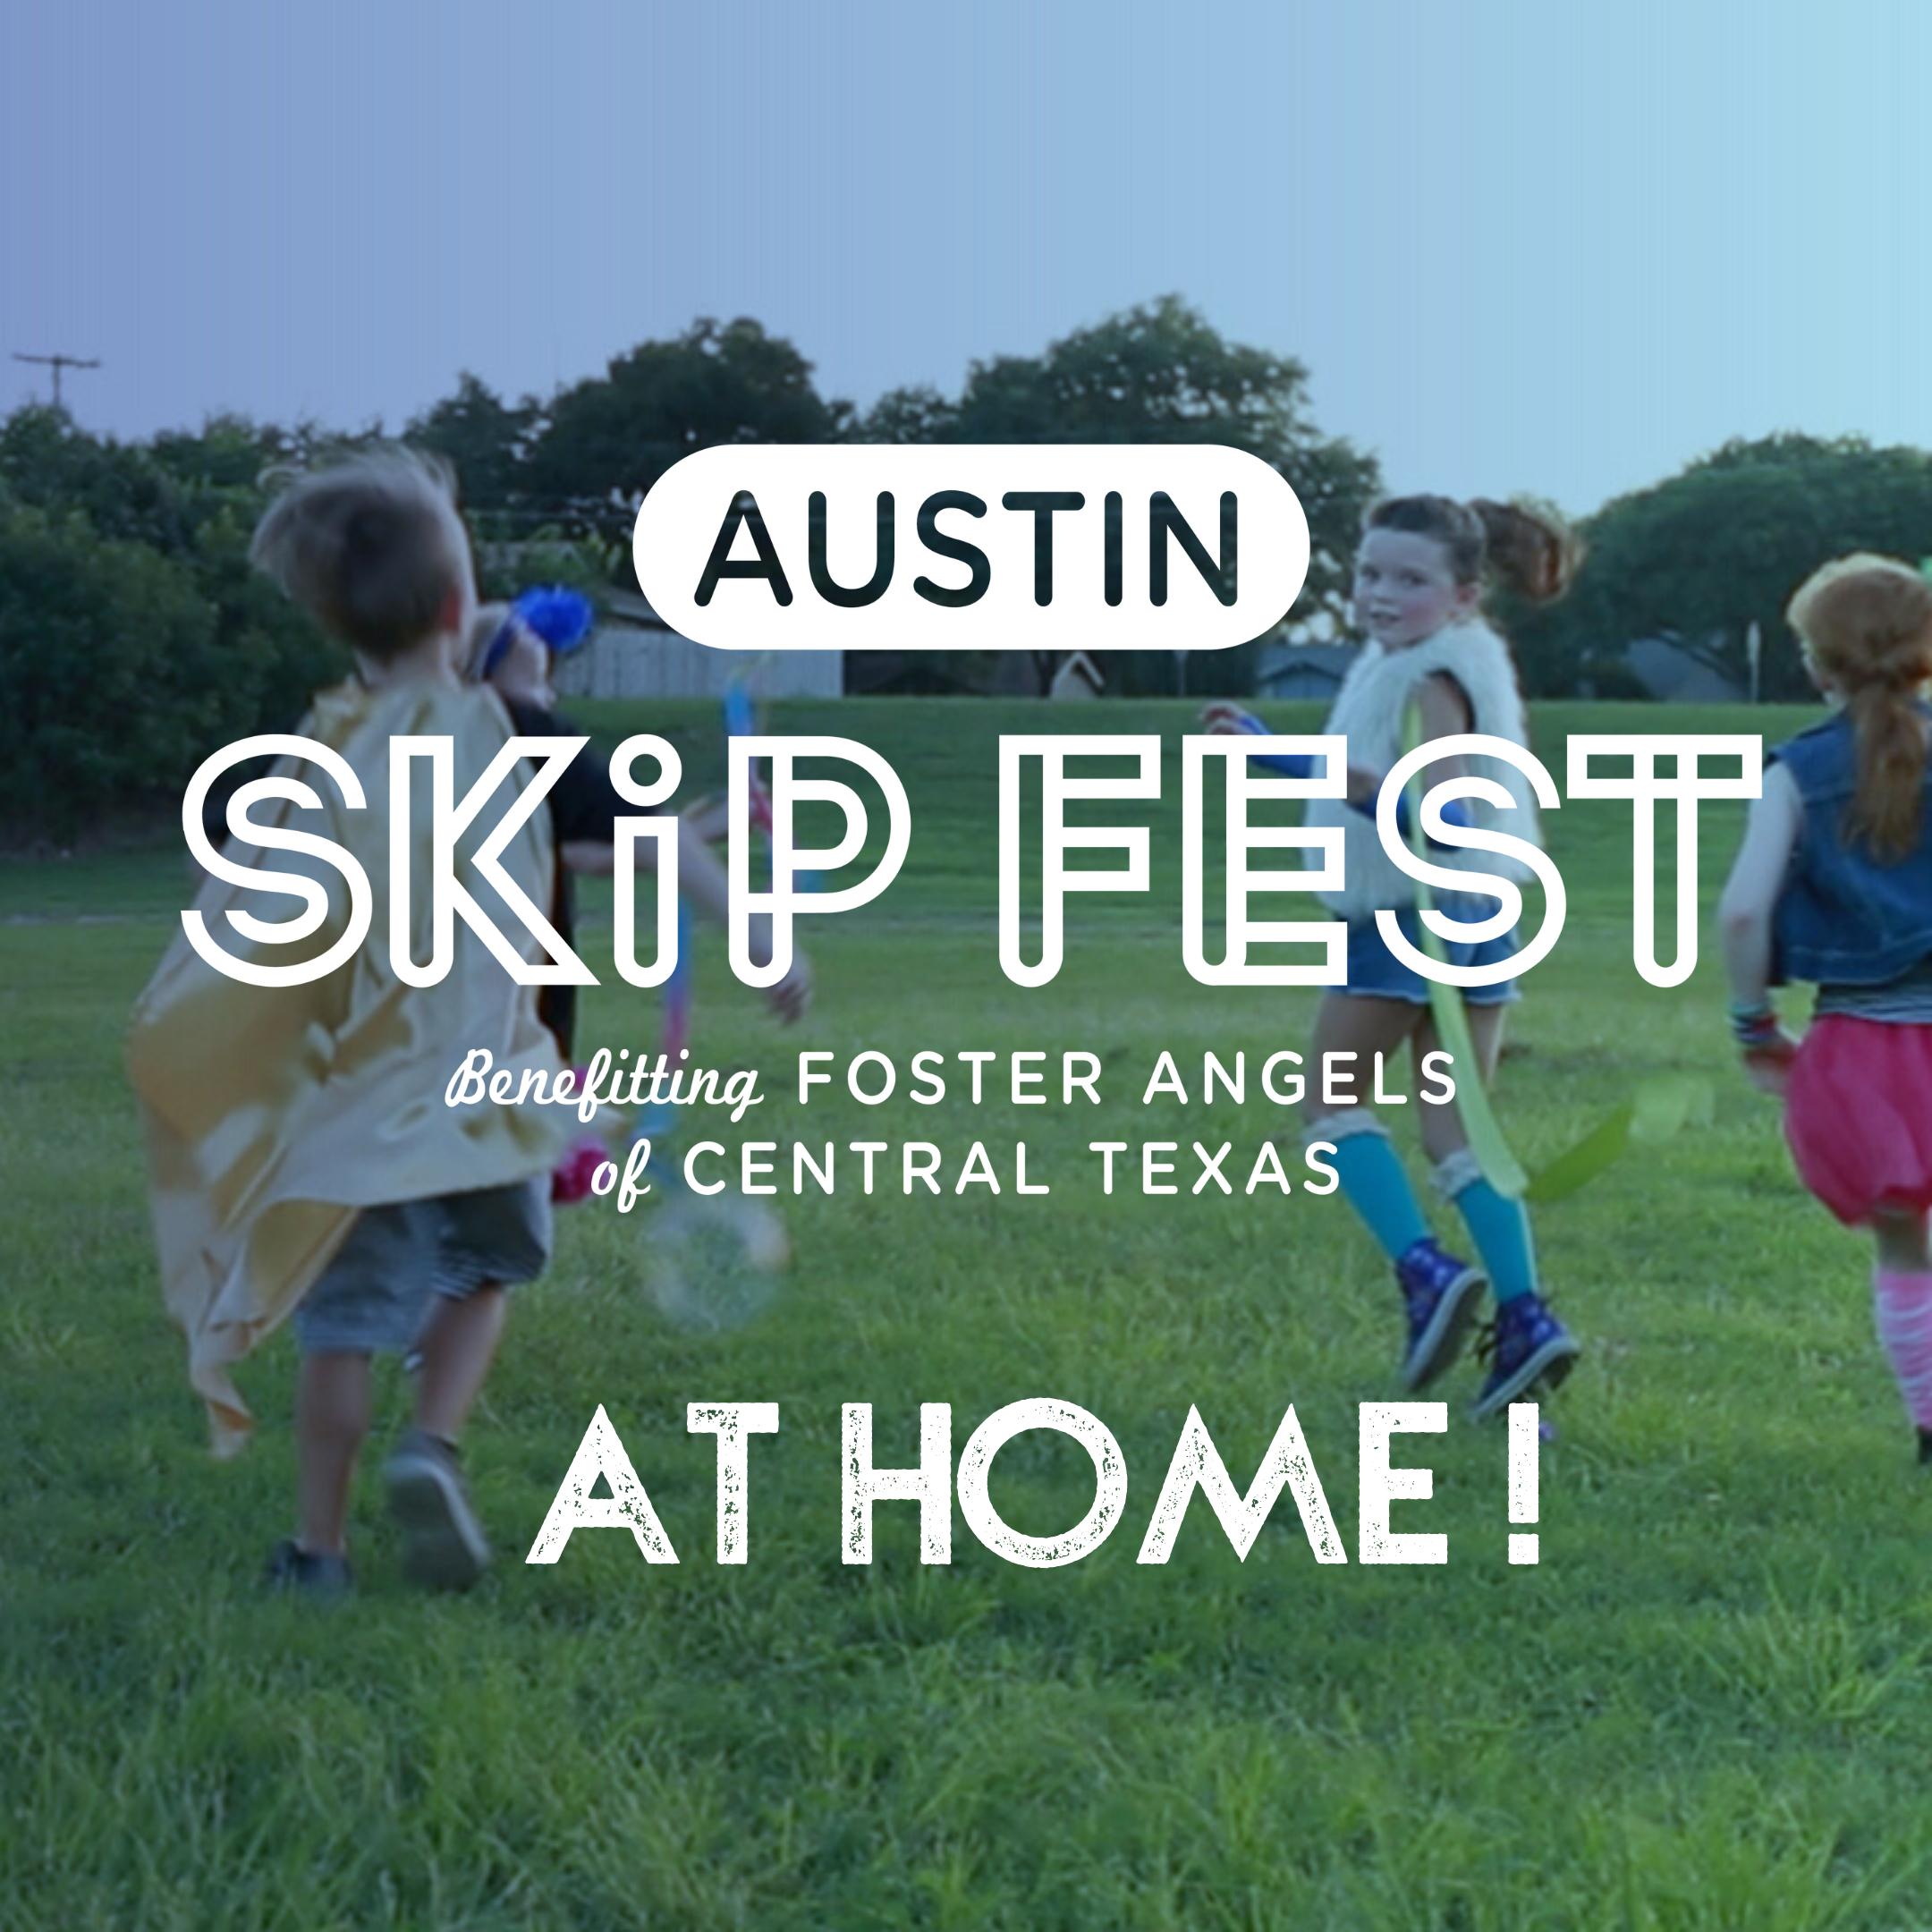 The Austin SkipFest